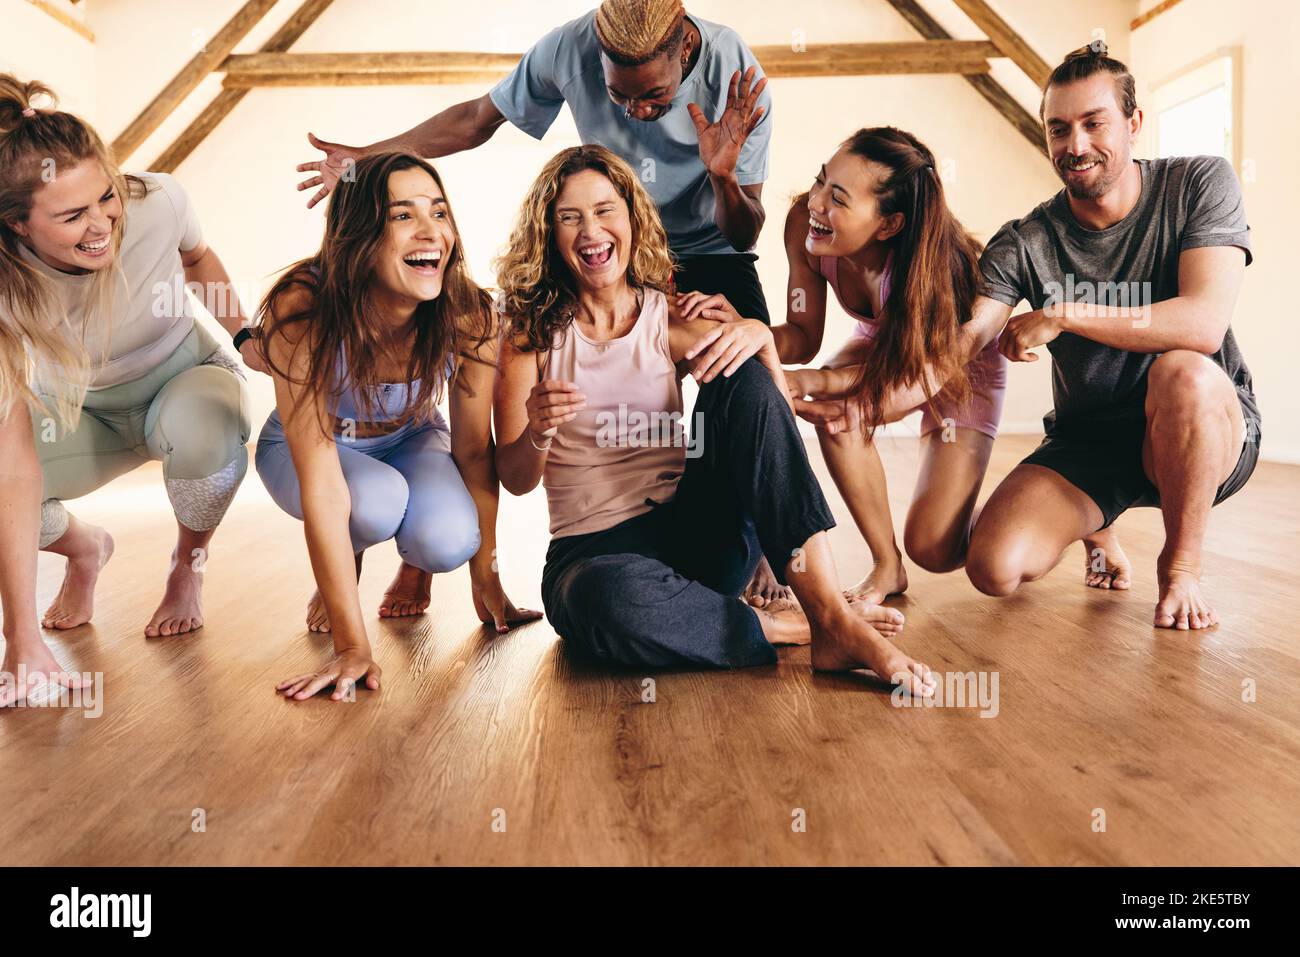 Eine Gruppe glücklicher Fitnessfreunde, die in einem Yoga-Studio lachen und Spaß haben. Multikulturelle Menschen, die eine Pause von einer Yoga-Sitzung machen. Sportliche Menschen sind dabei Stockfoto